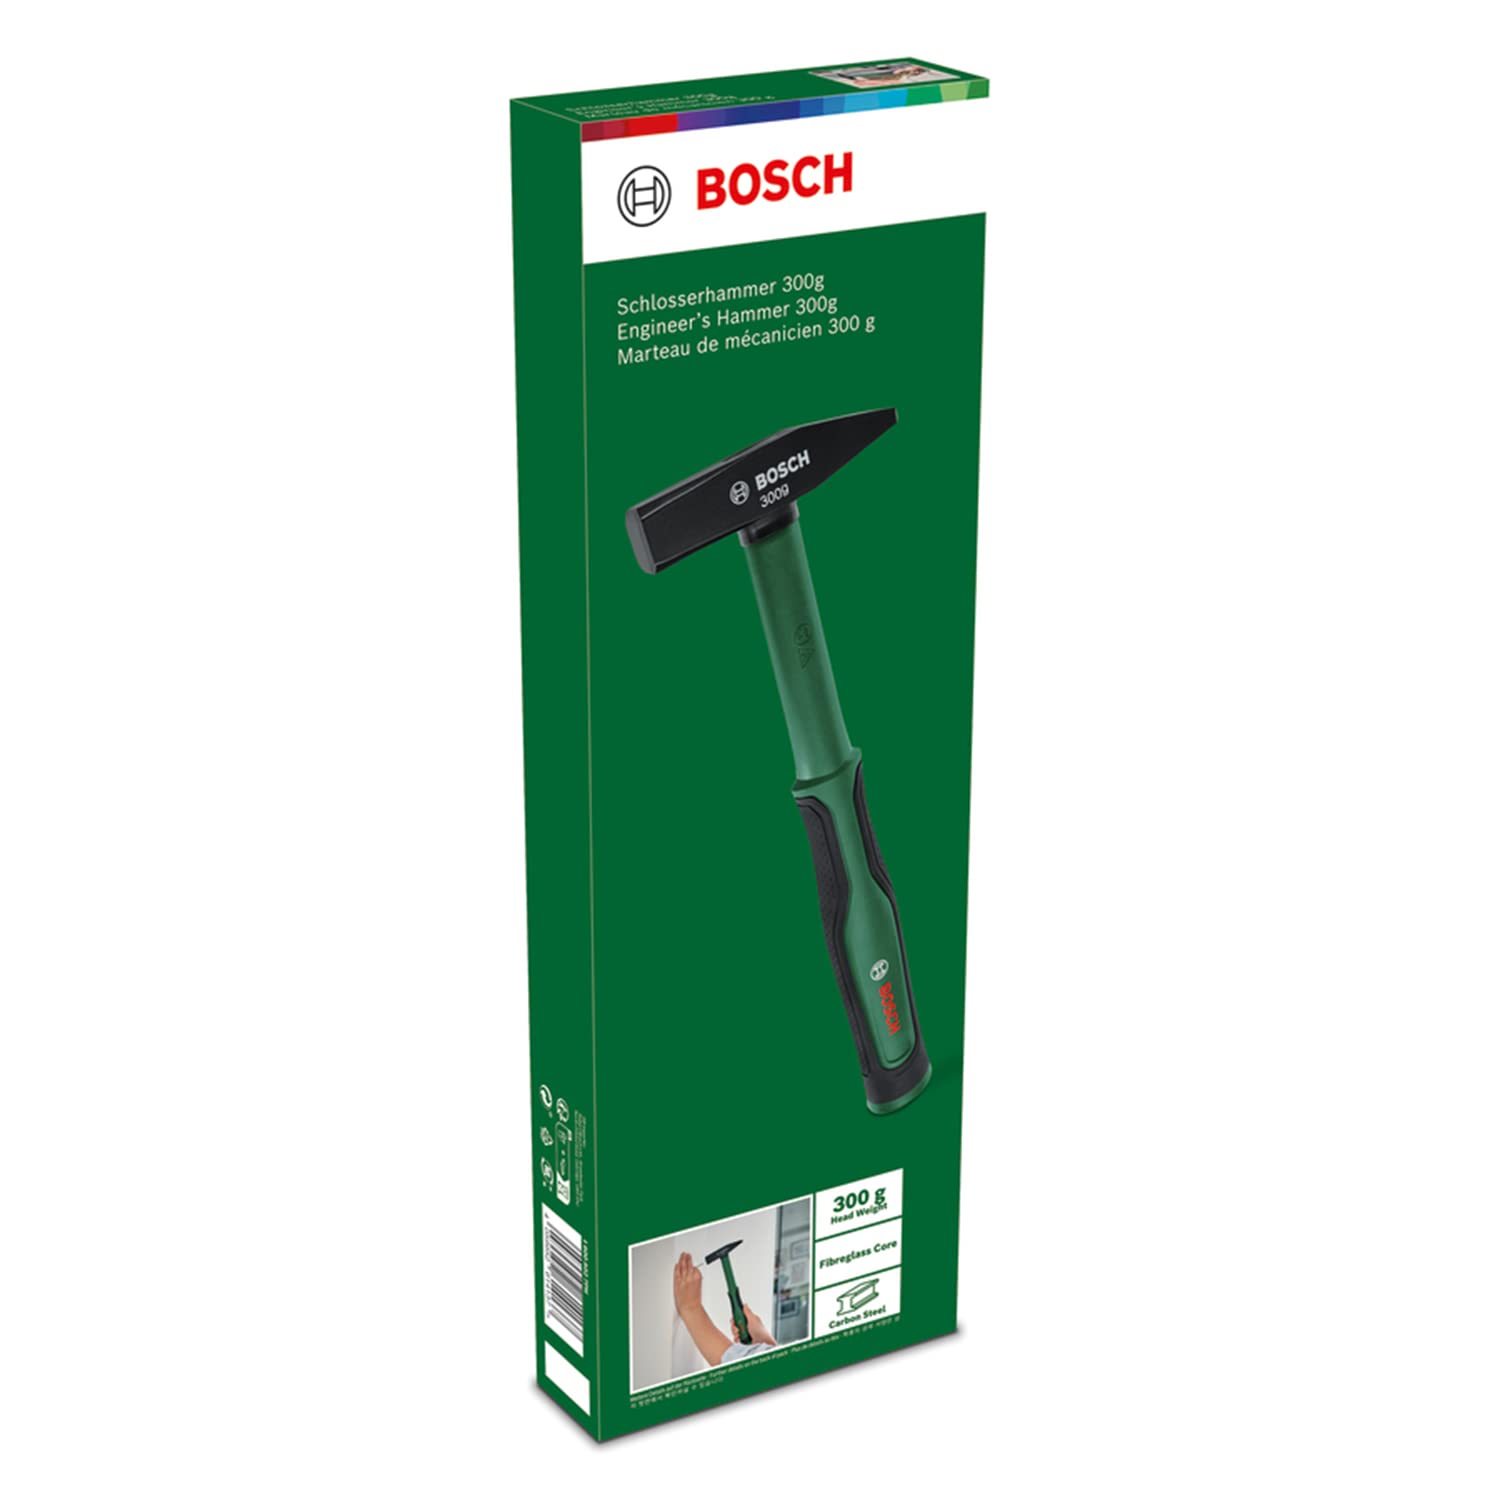 Bosch DIY Engineer's Hammer 300g 1600A027PH